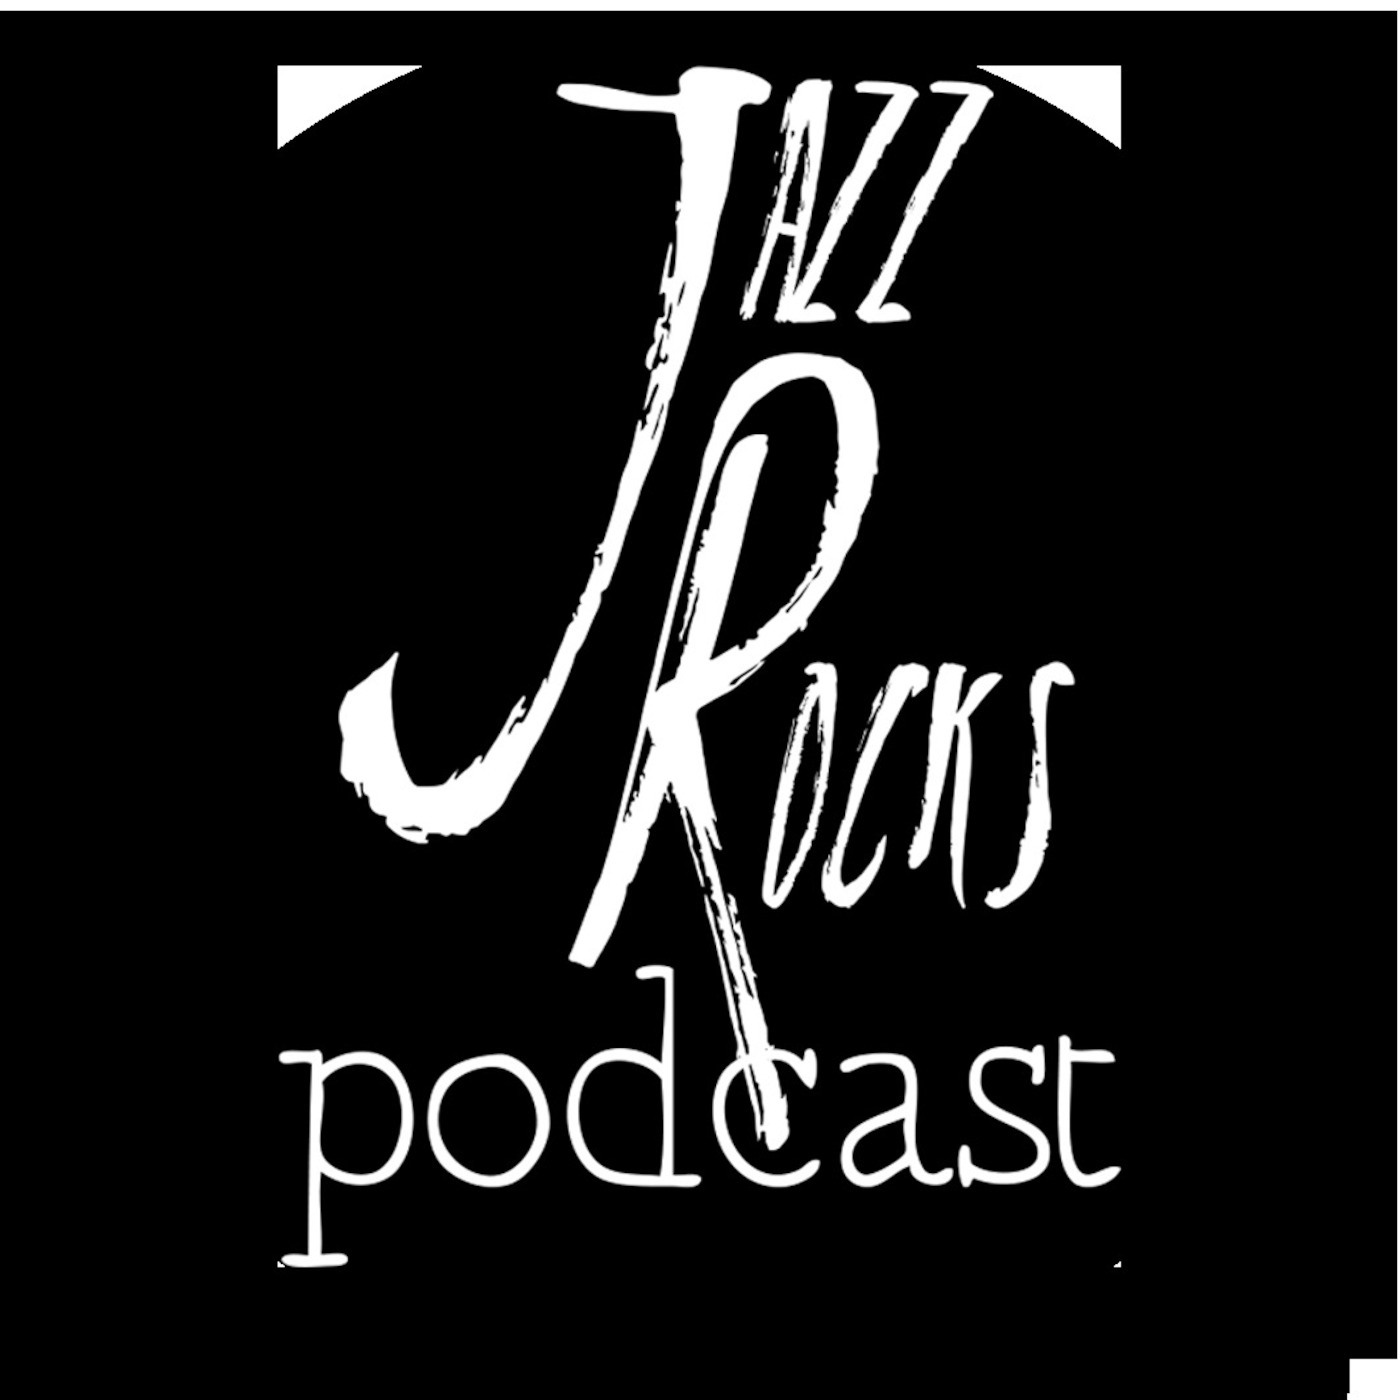 Jazz Rocks Podcast